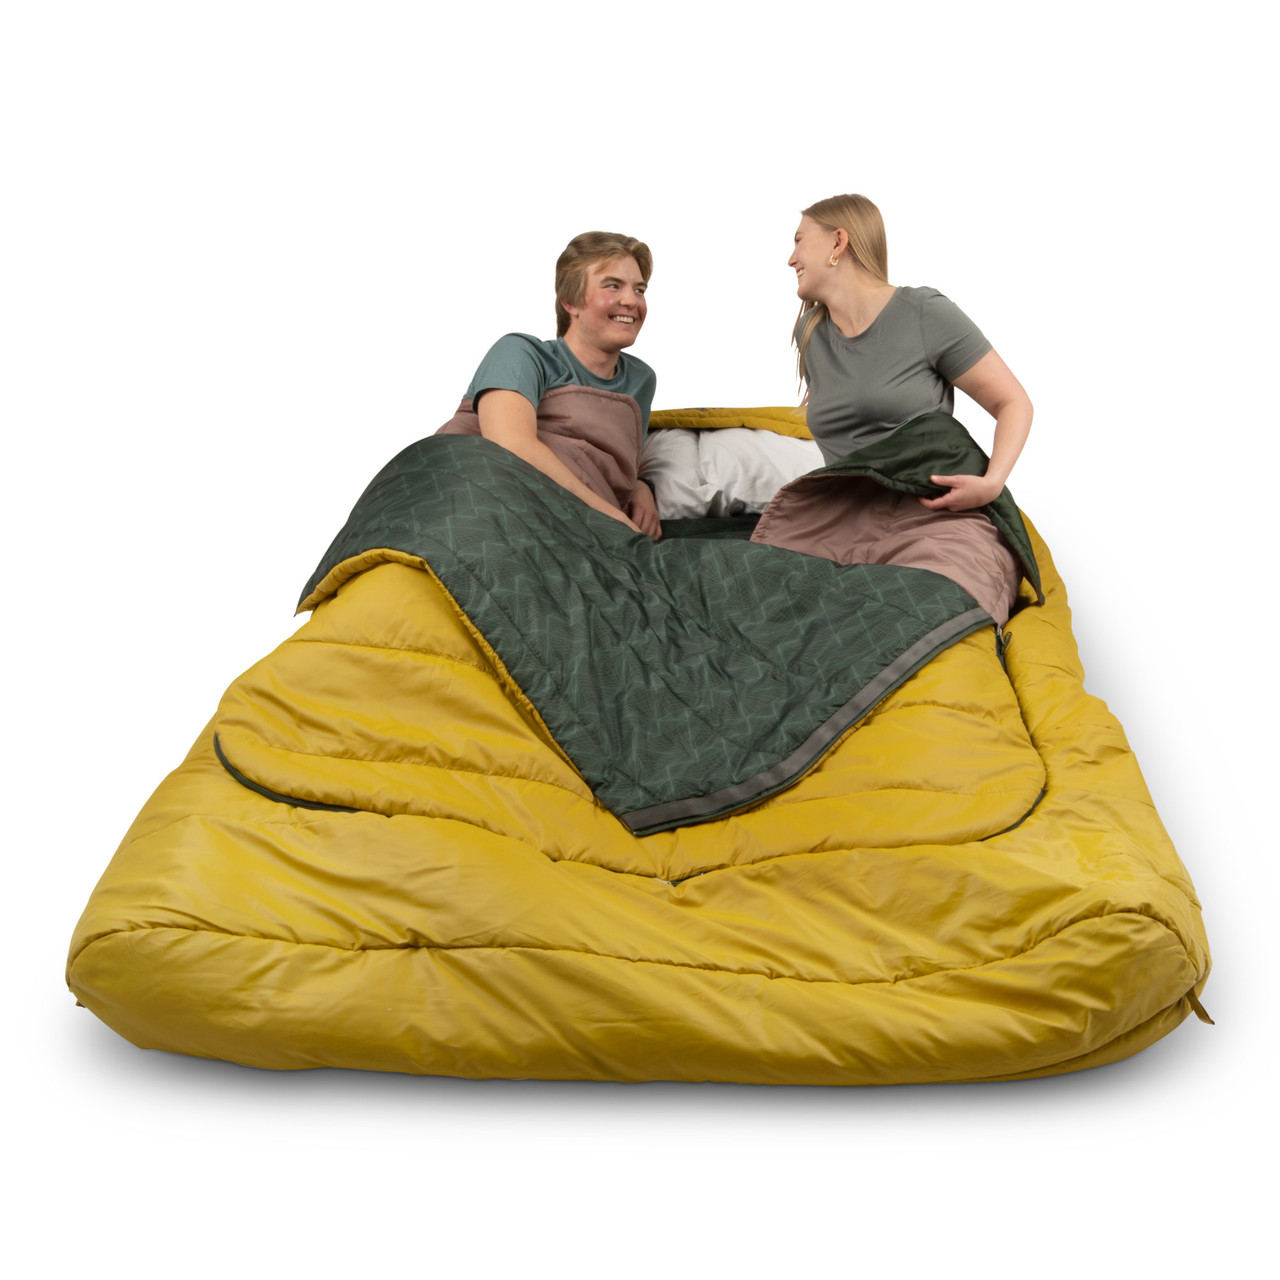 Tru.Comfort Doublewide 20 Degree Sleeping Bag